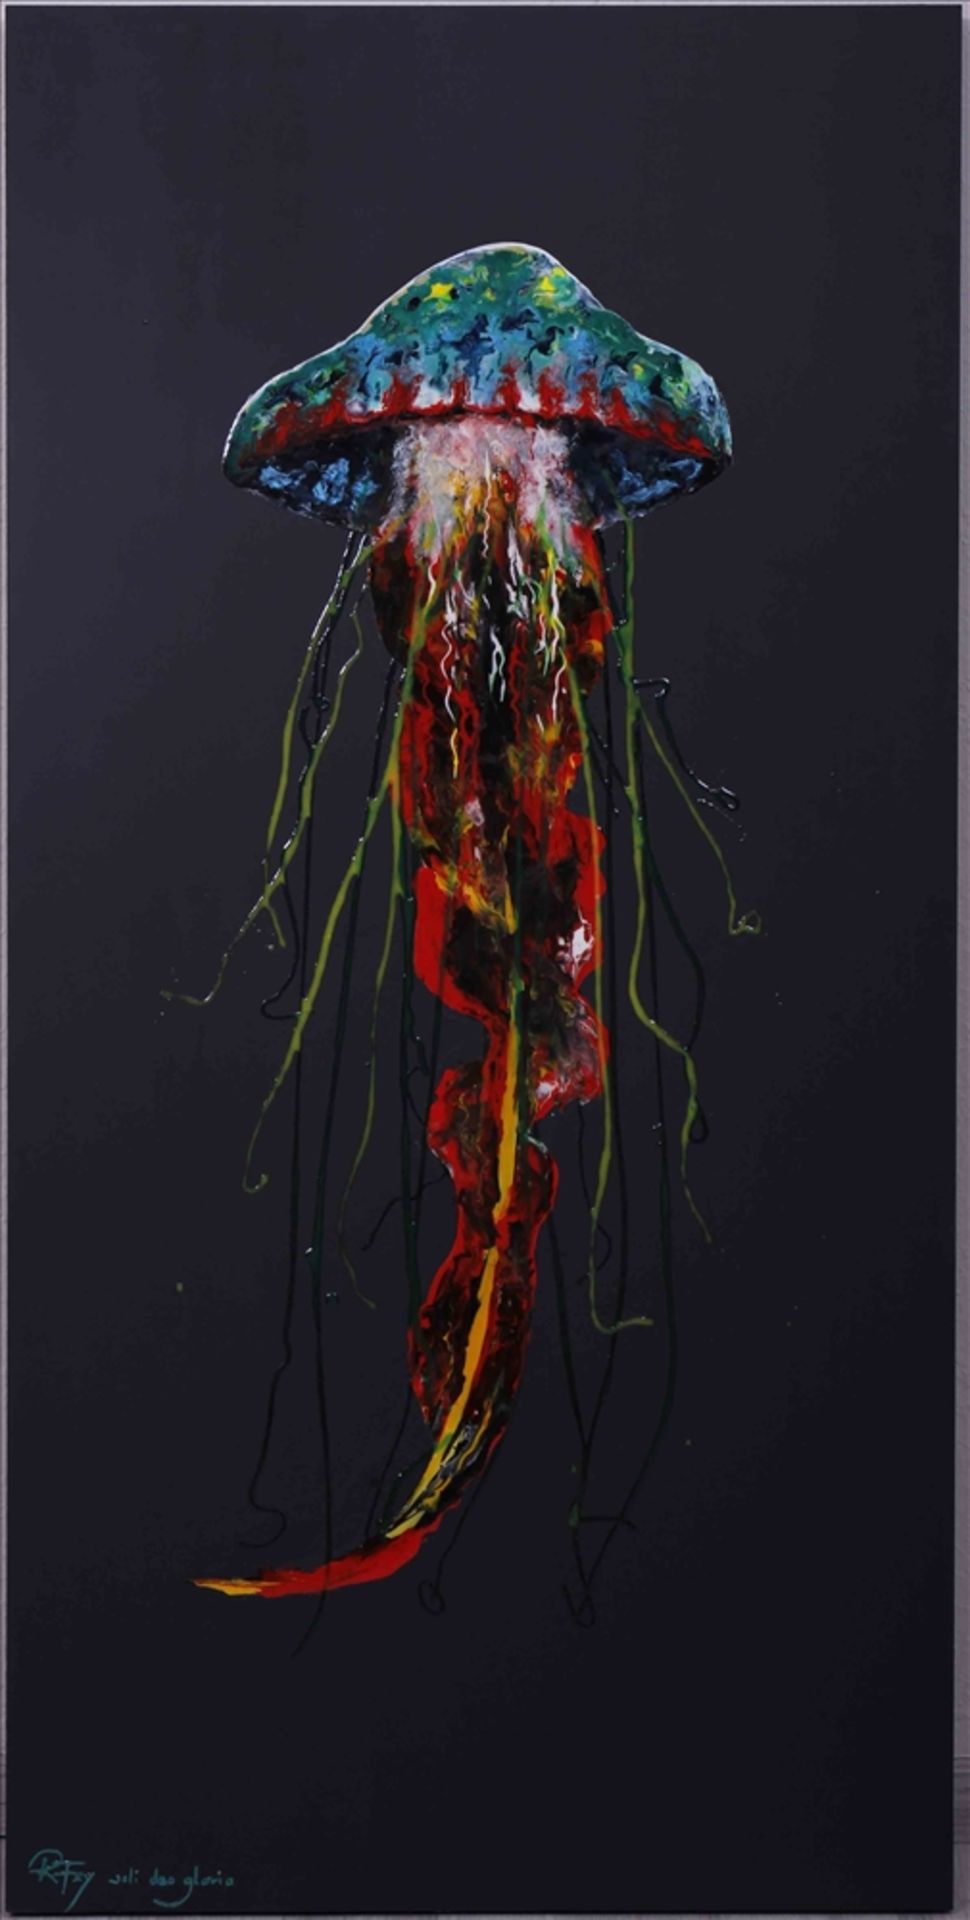 Roswitha Fey, "Die Qualle" auf schwarzem Untergrund, Flüssigglas und Acryl auf Holz, u.l. sign. "